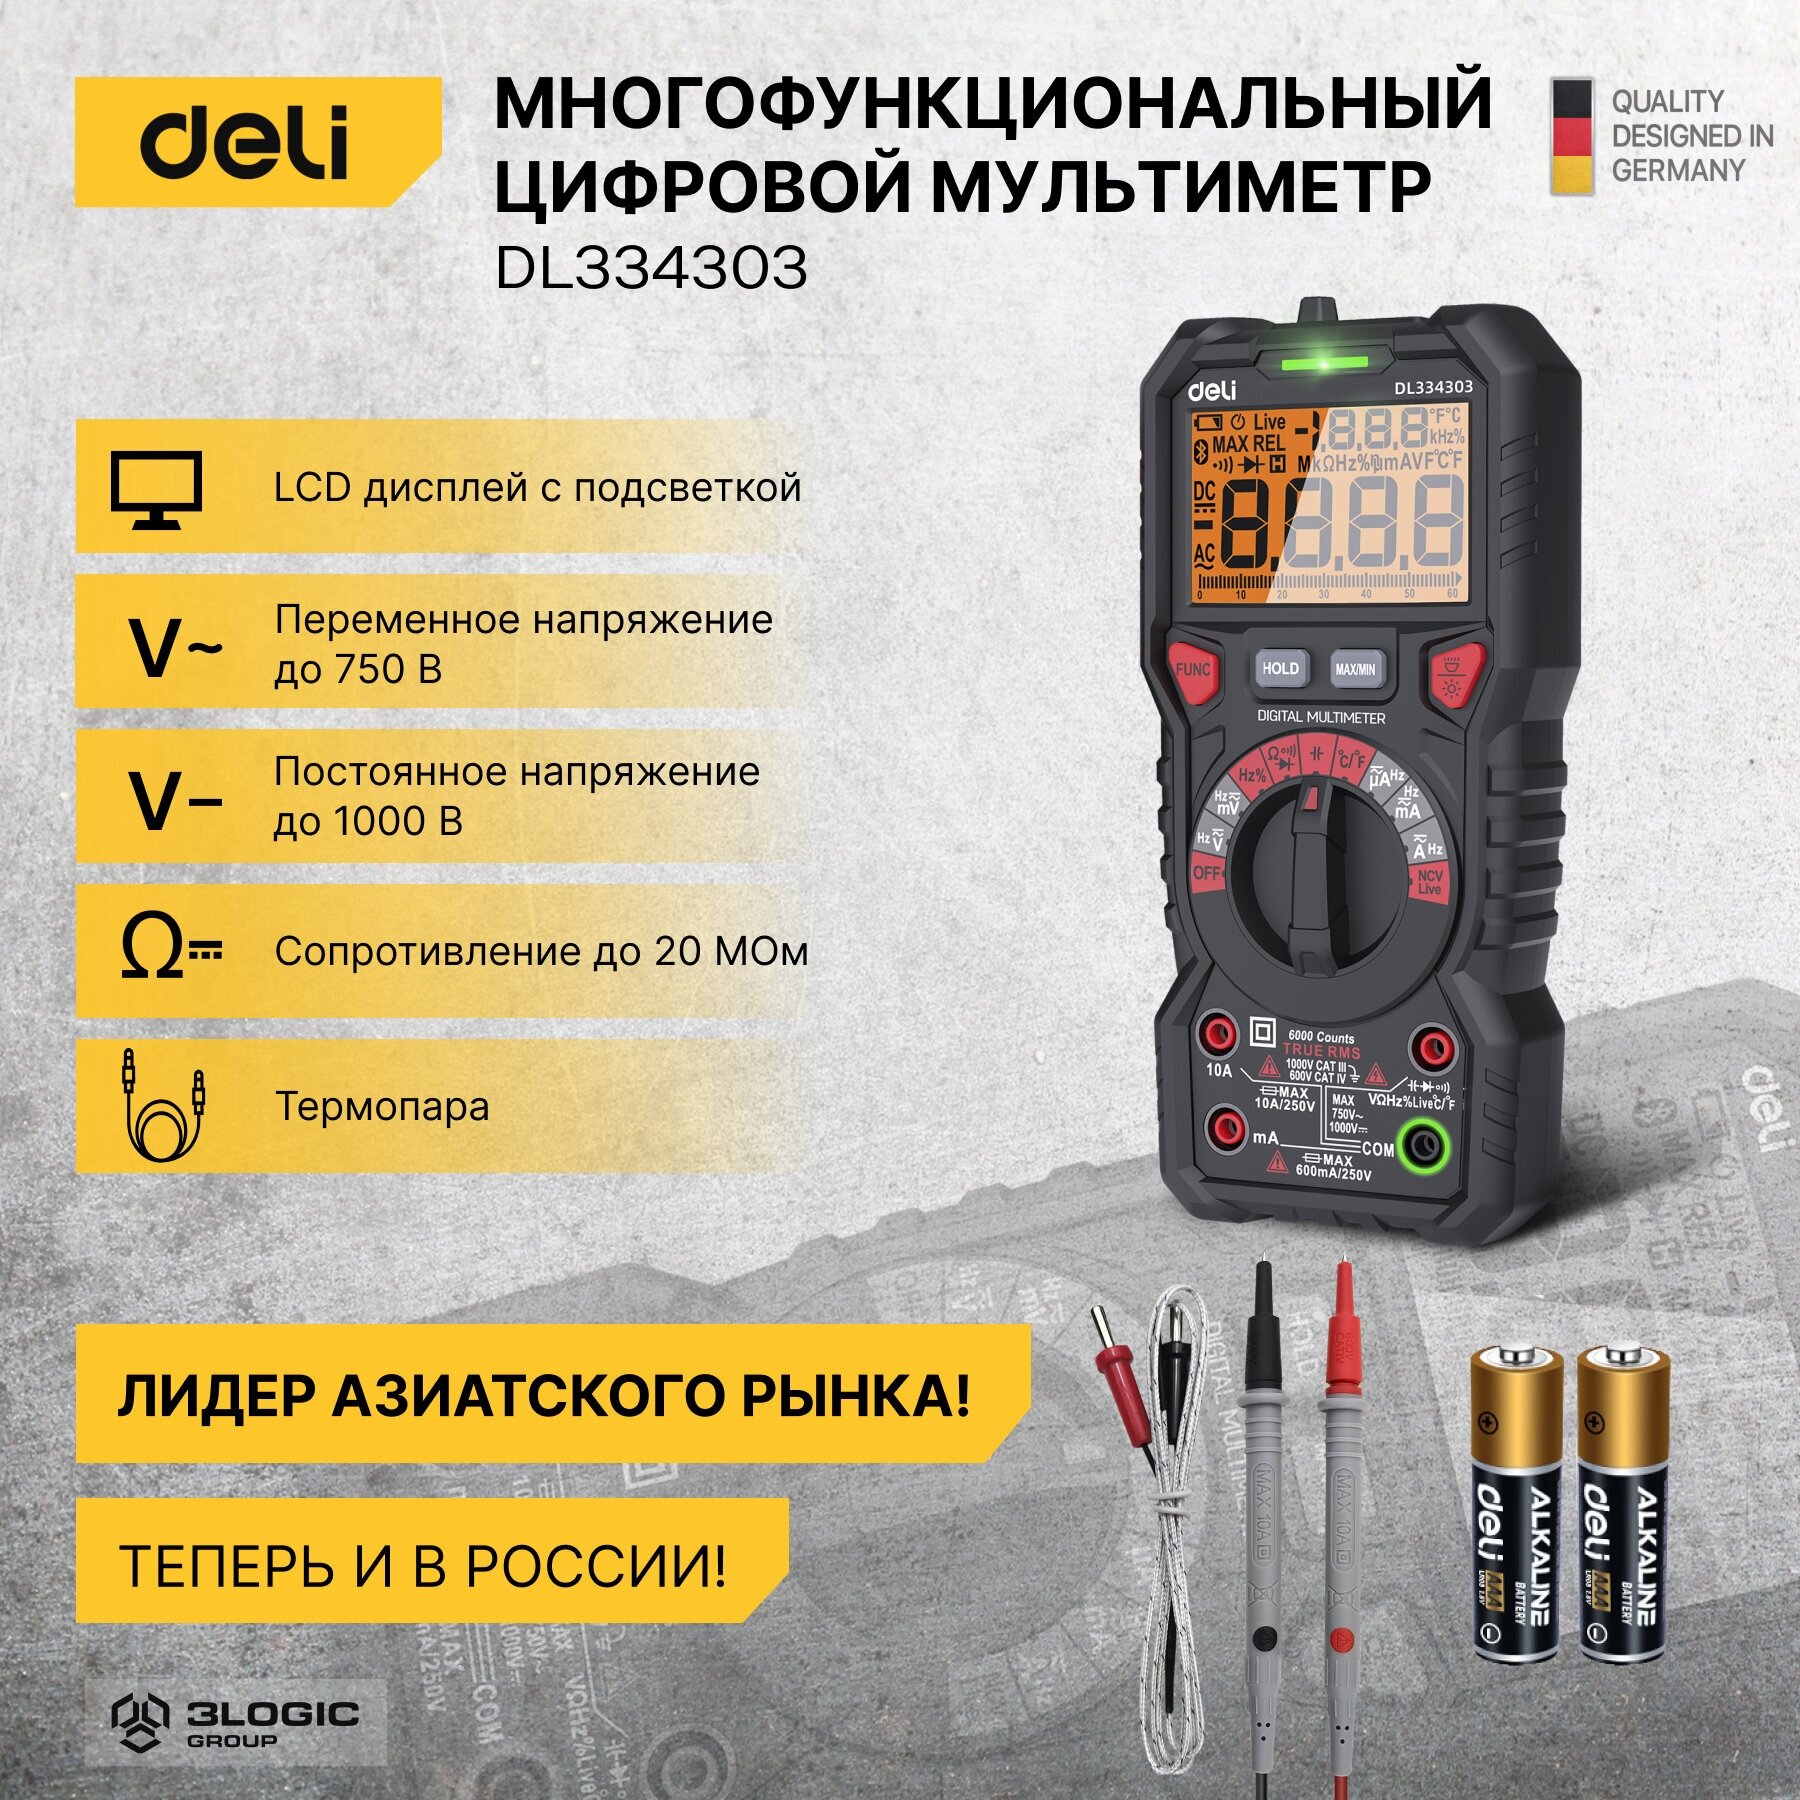 Многофункциональный цифровой мультиметр Deli DL334303 (напряж 0-1000В, сила тока 0,02-10А, сопр до 60МОм, ЖК дисплей, 2х1, 5В ААА)